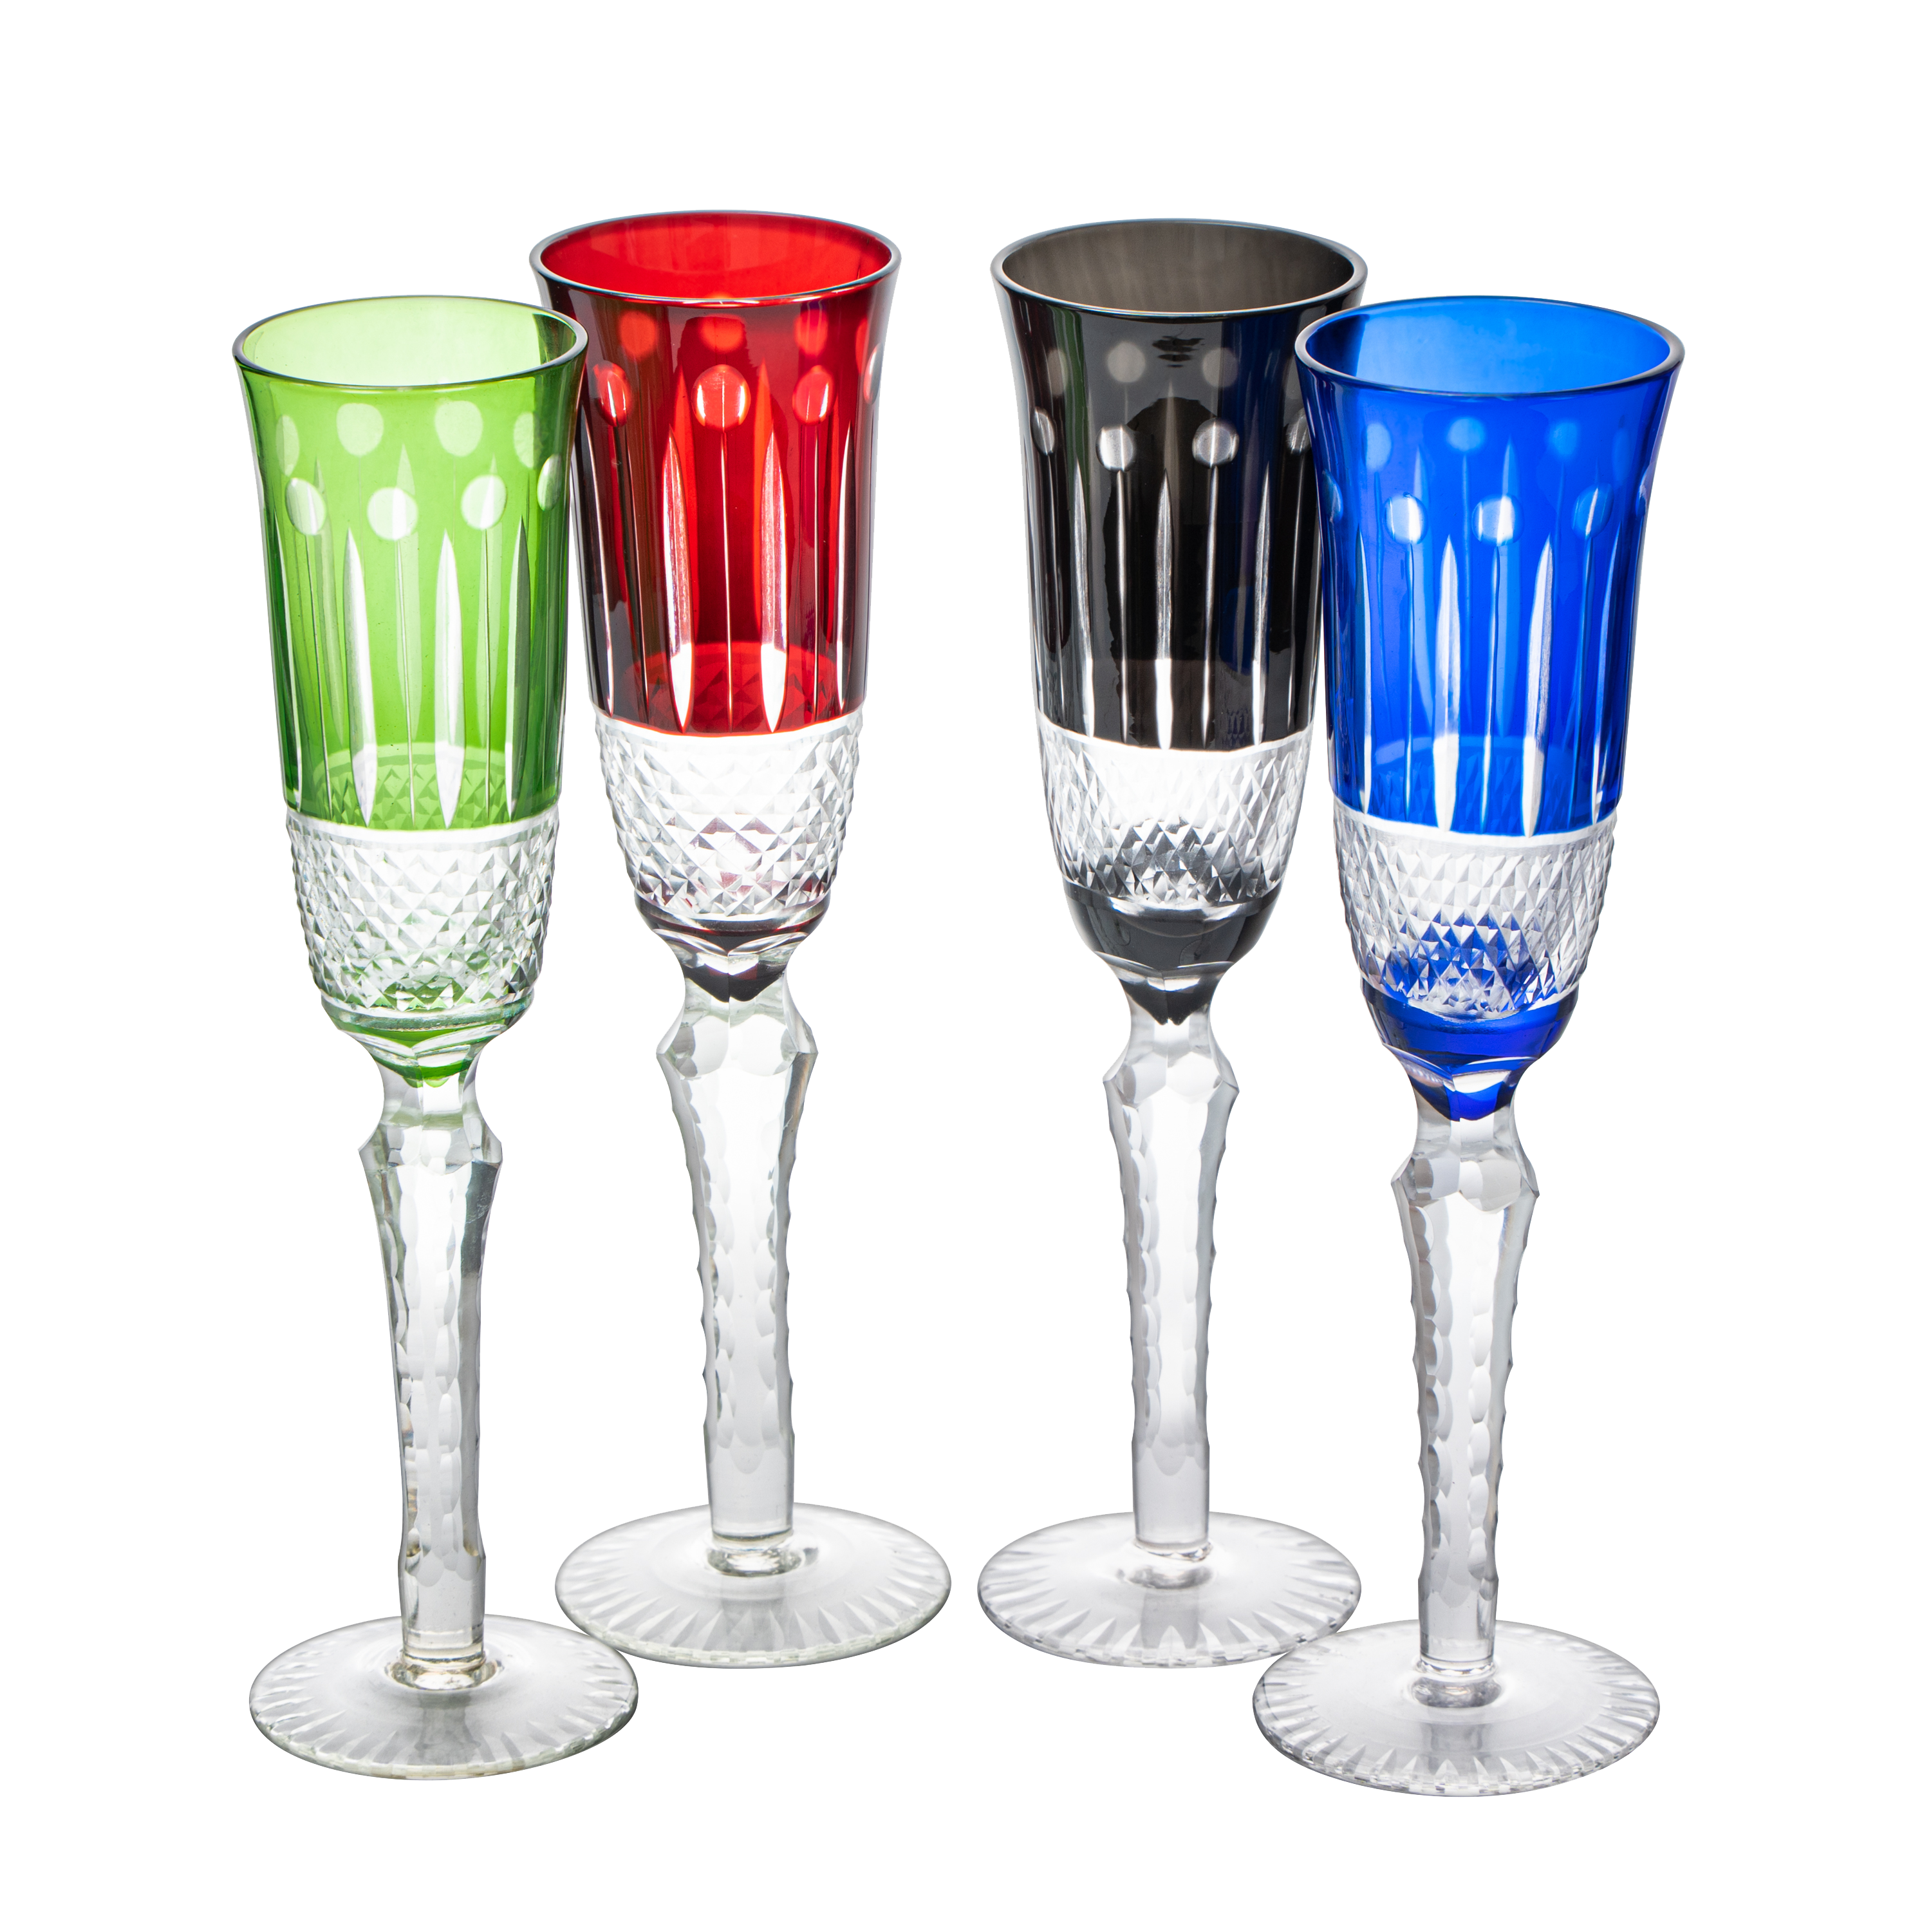 1 Pcs Ribbed Glassware,Vintage Glass,20 oz Modern Glass Cup,Ripple Drinking Glass,Ribbed Drinking Glass for Weddings,Cocktails or Modern Bar, Size